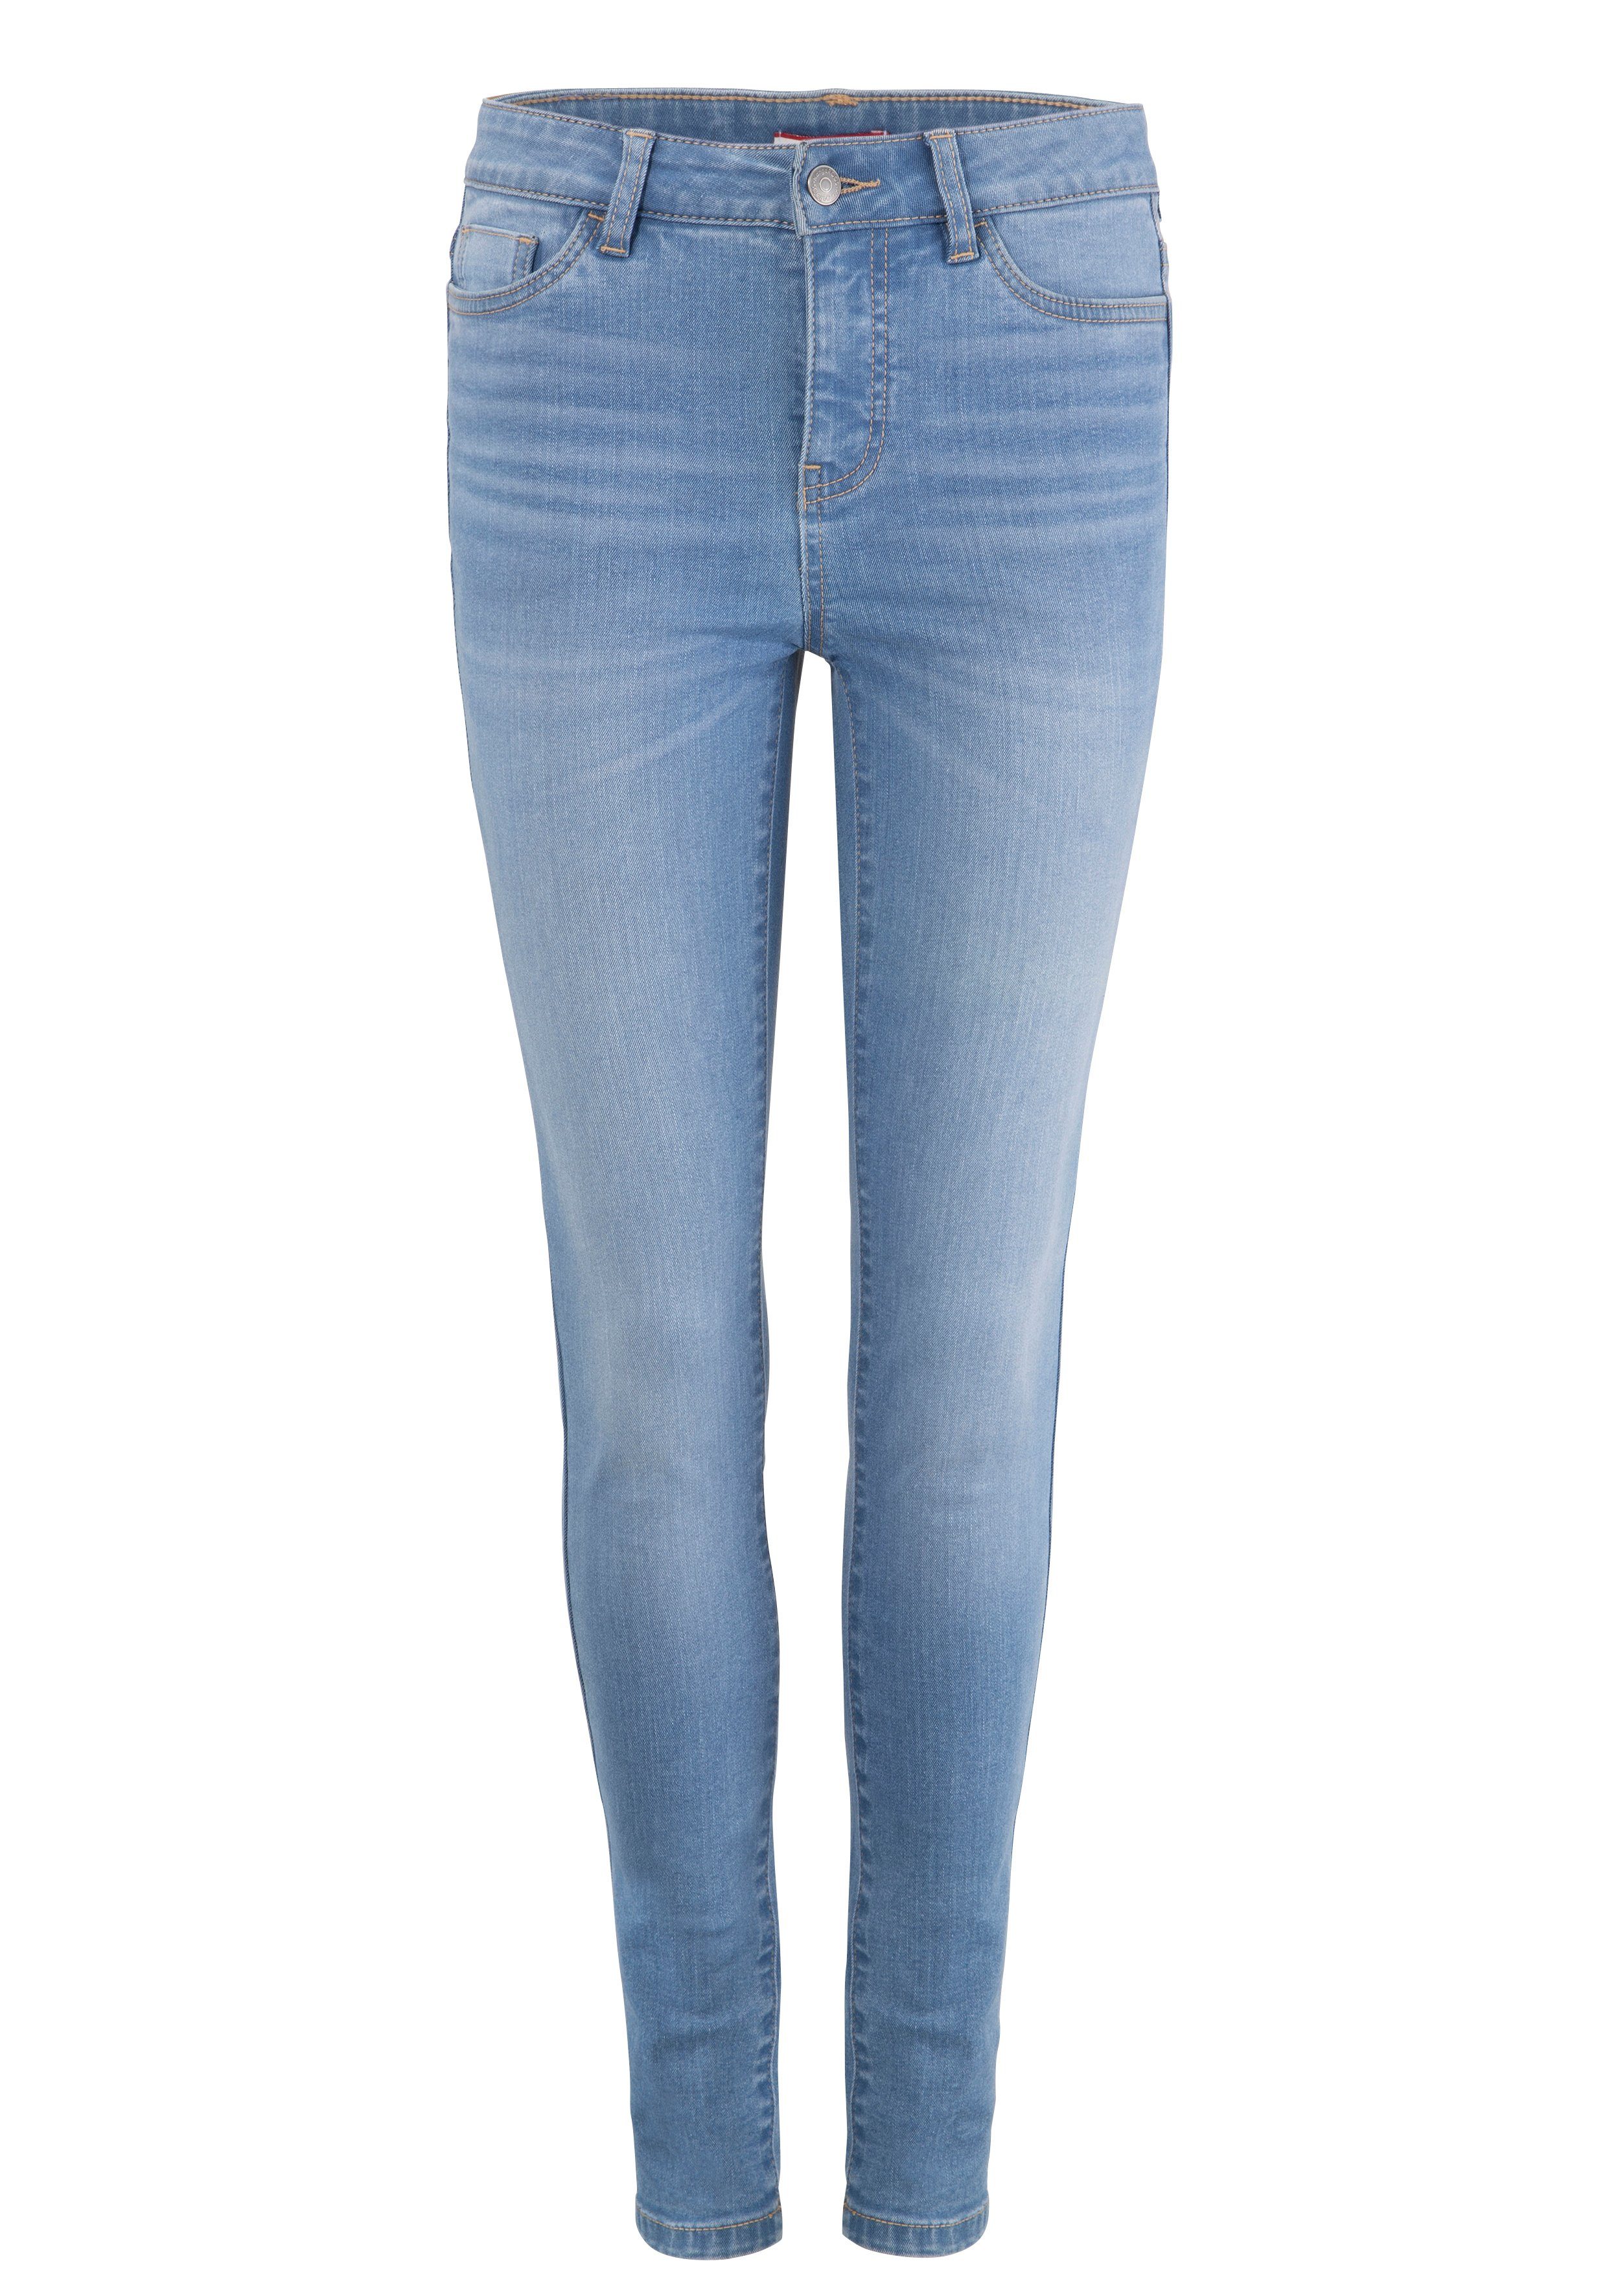 mit used-Effekt SUPER light-blue-used RISE 5-Pocket-Jeans HIGH SKINNY KangaROOS